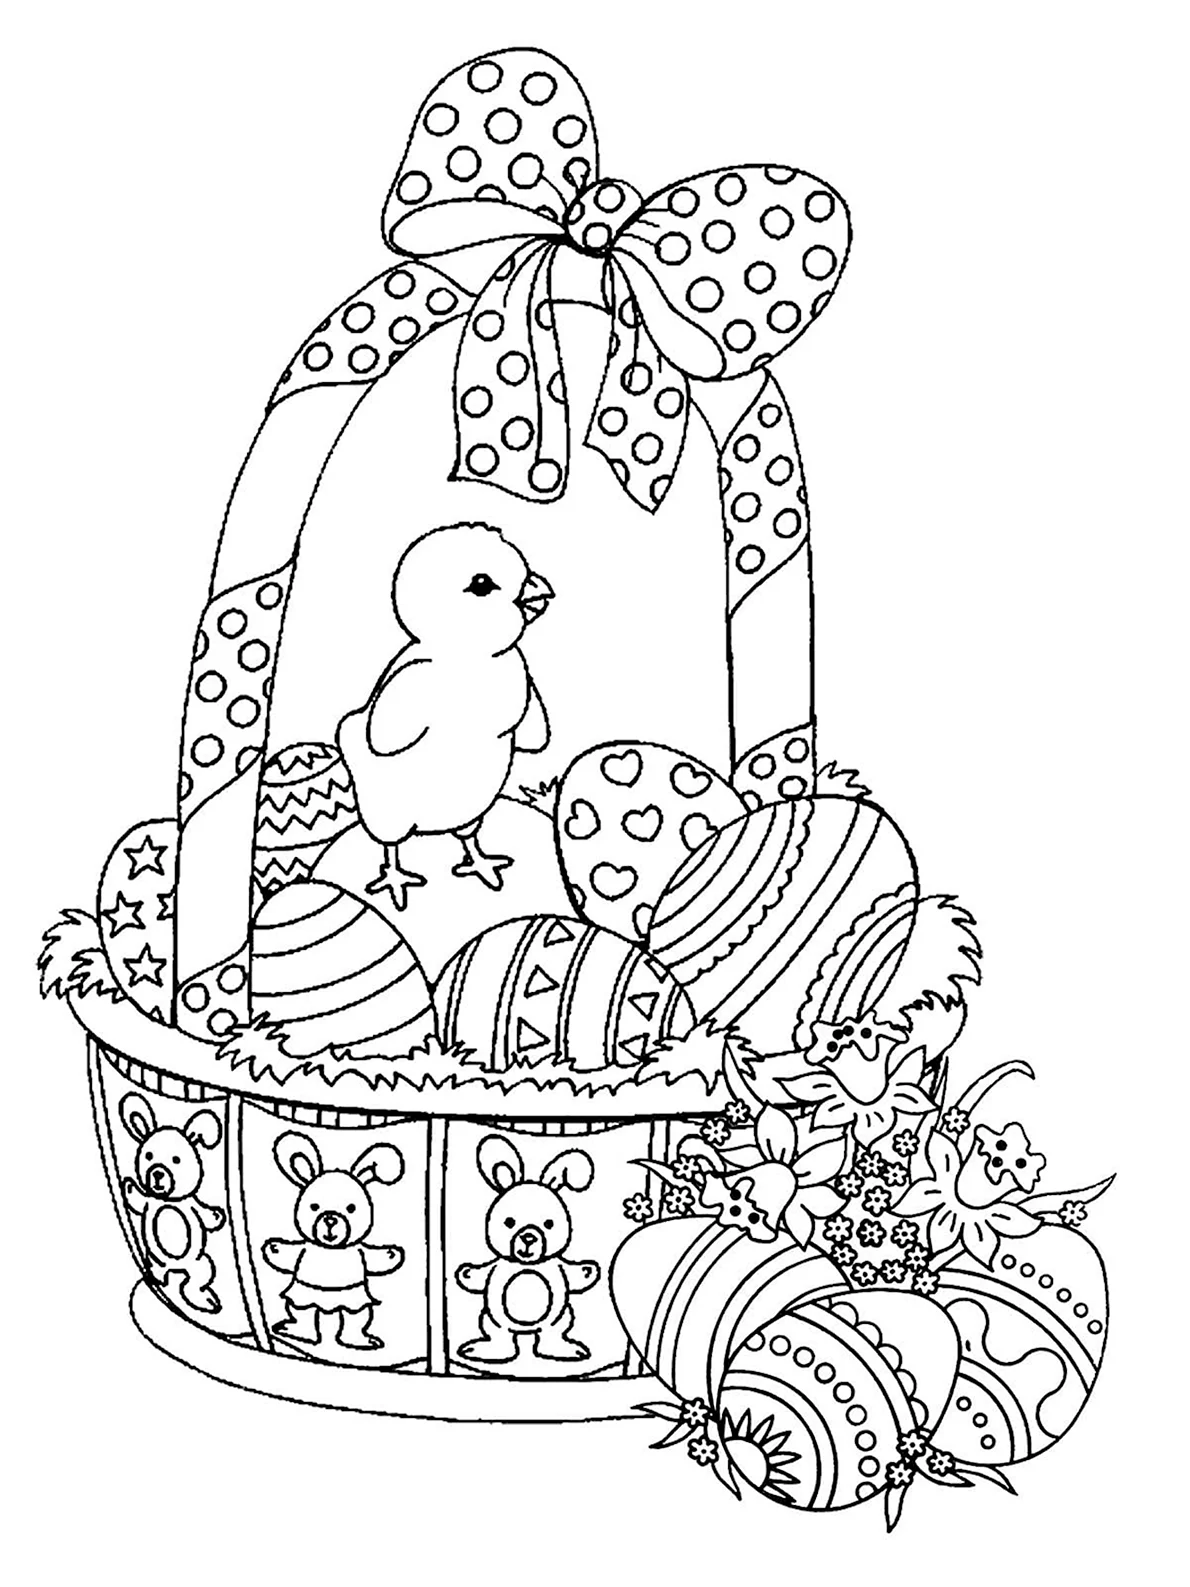 Открытка на пасху нарисовать. Раскраска Пасхальный кулич с яйцами. Раскраски пасхальные для детей. Раскраска Пасха для детей. Раскраска пасхальные яйца в корзине.